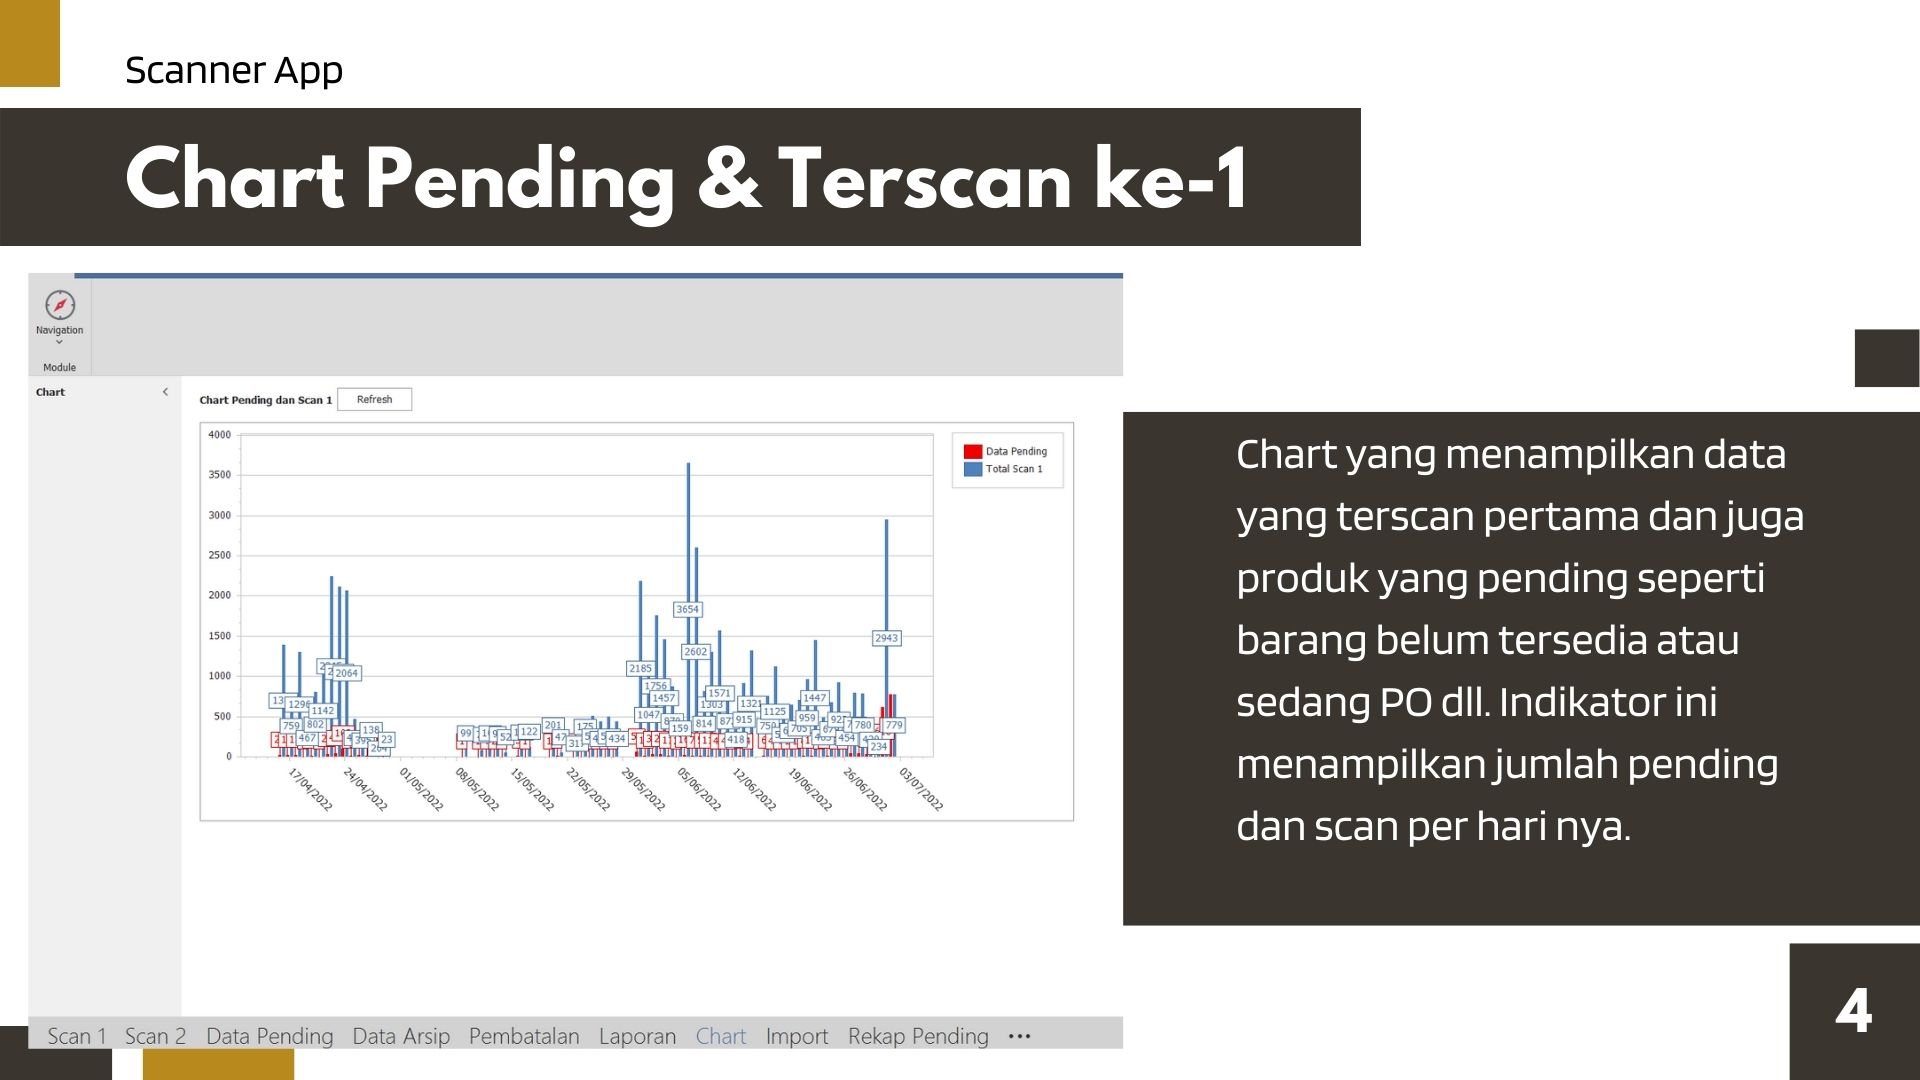 Menu Chart Pending dan Terscan Ke-1 Barcode Scanner App Application Jasawebsitemurah.web.id